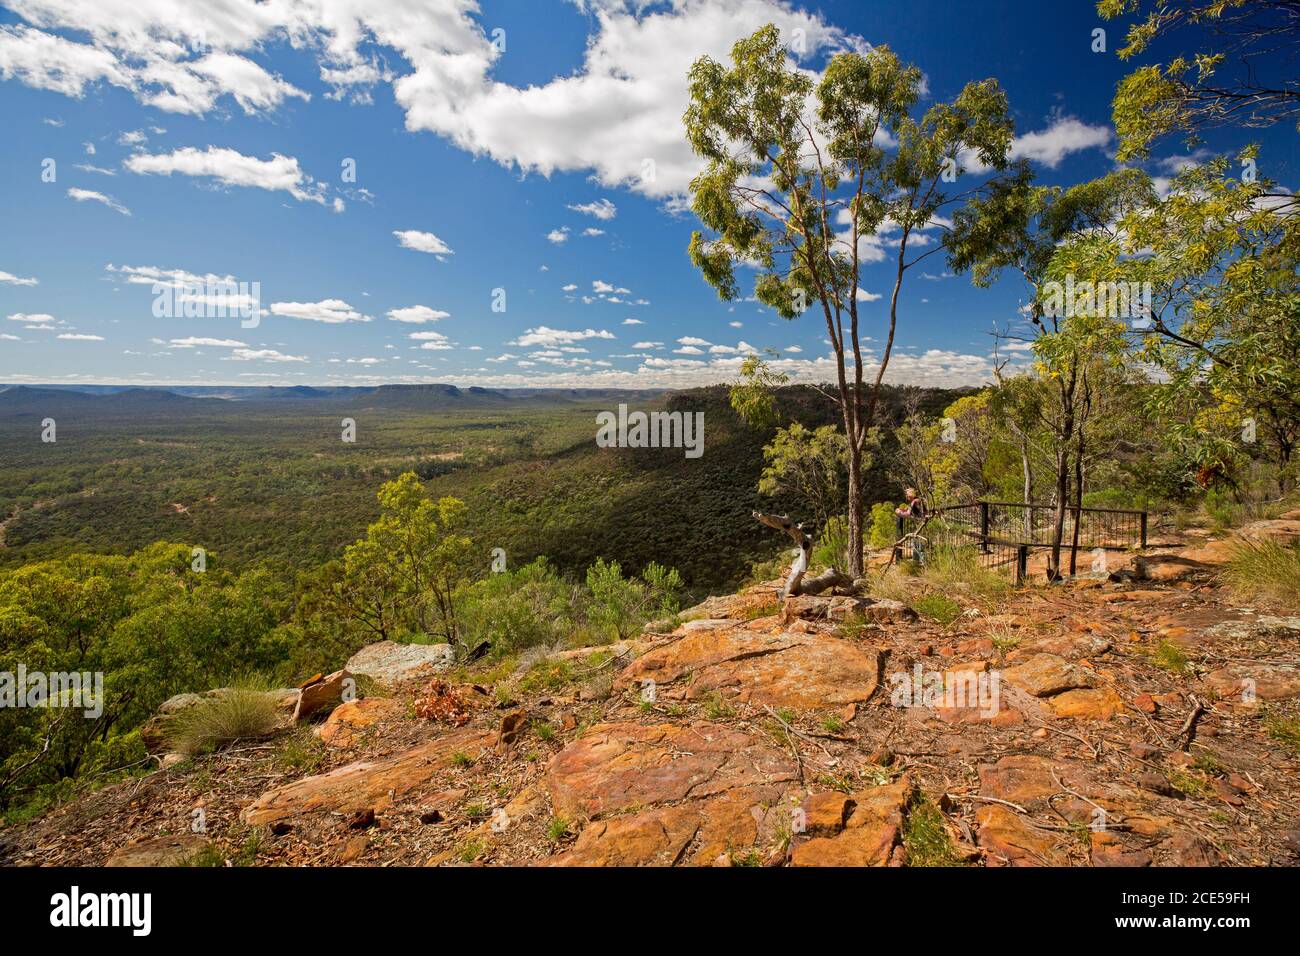 Landschaft von Hügeln und riesigen Eukalyptuswäldern von hoch aus gesehen Aussichtspunkt am südlichen Ende des Arcadia Valley im Zentrum von Queensland Australien Stockfoto